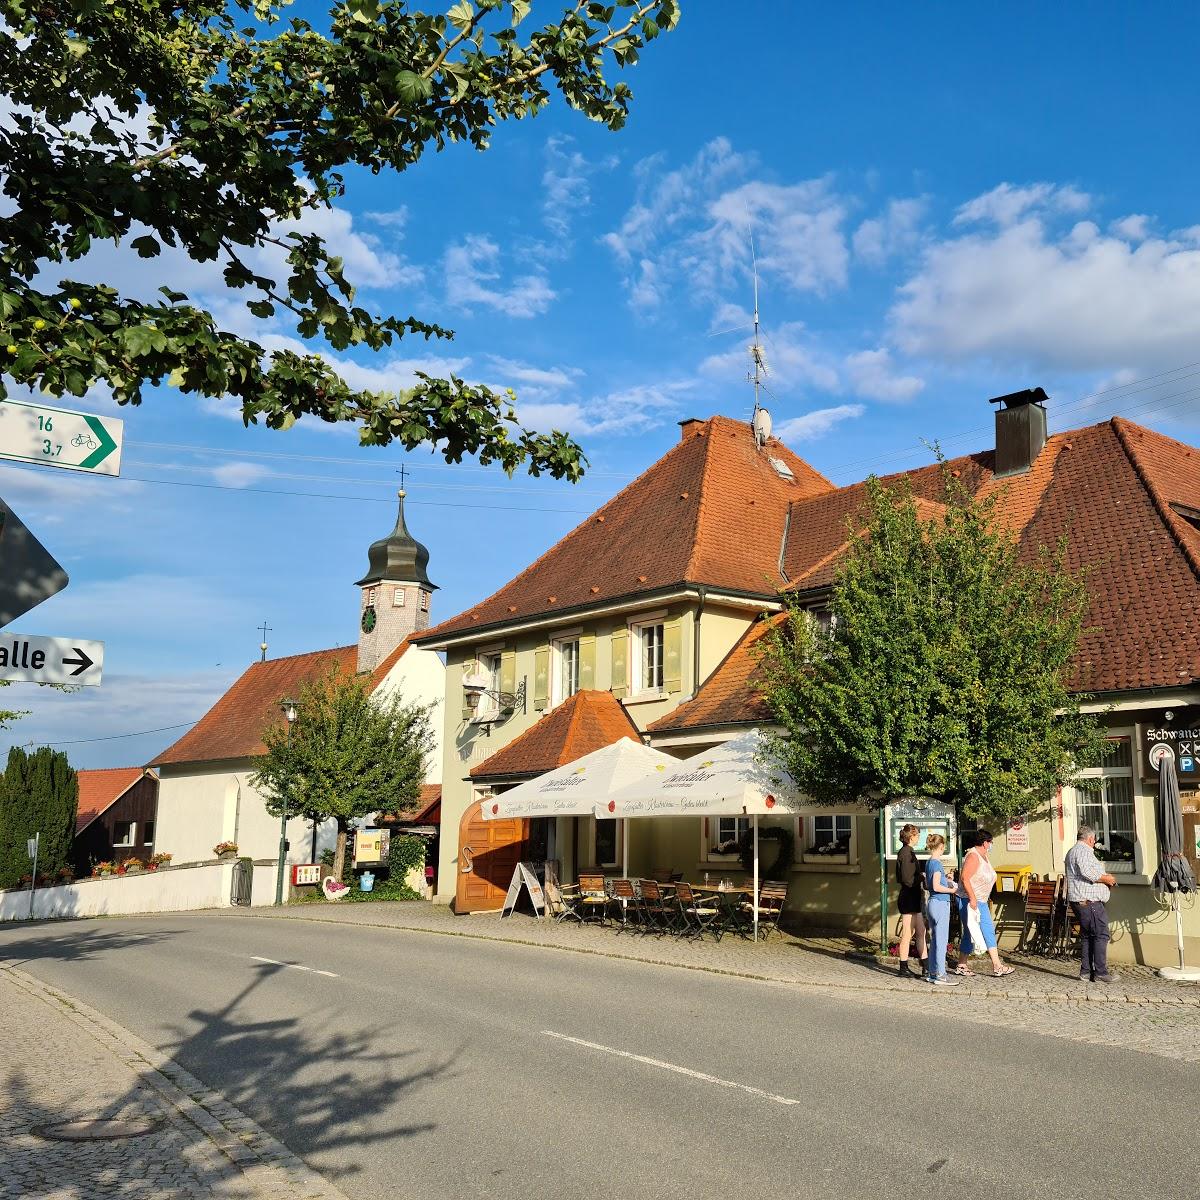 Restaurant "Schwanen" in Owingen